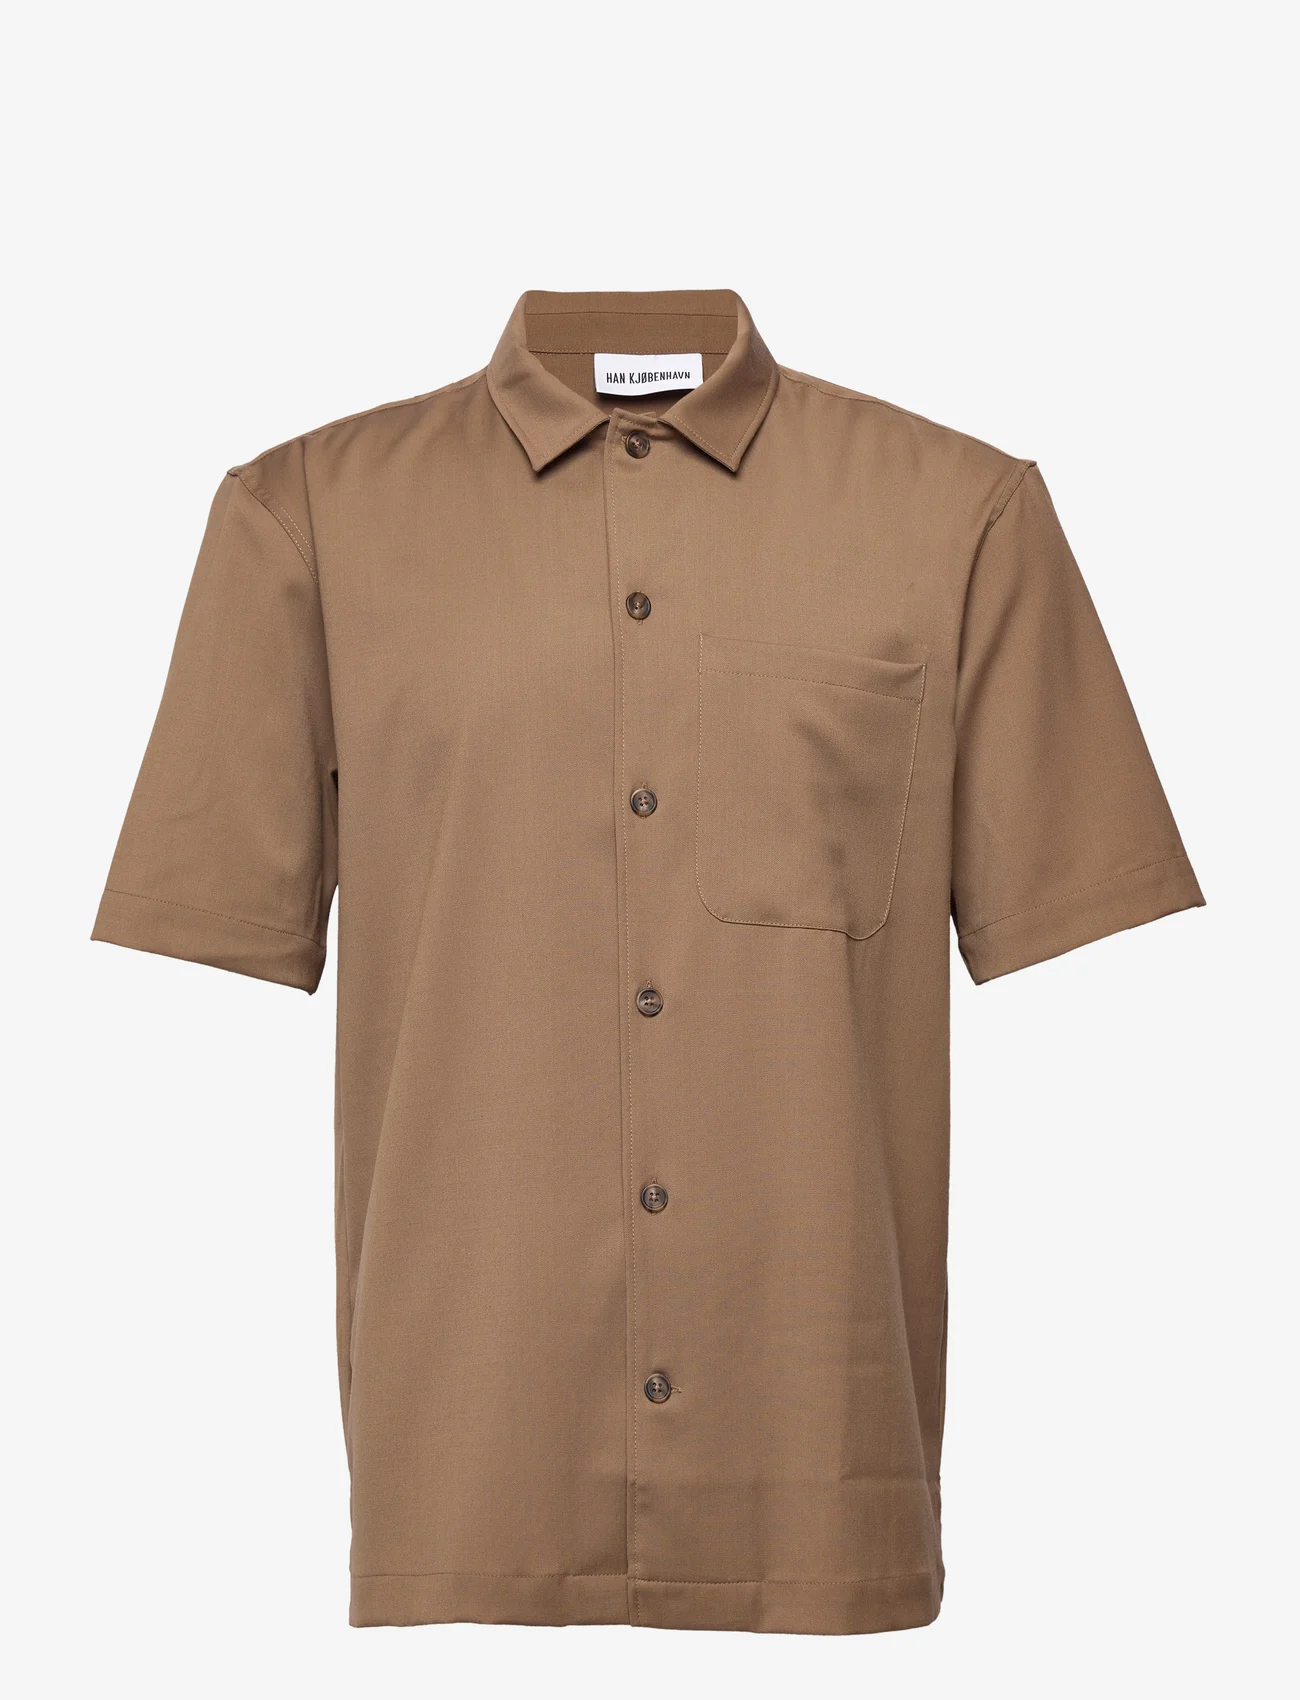 HAN Kjøbenhavn - Summer Shirt - basic skjortor - light brown - 0